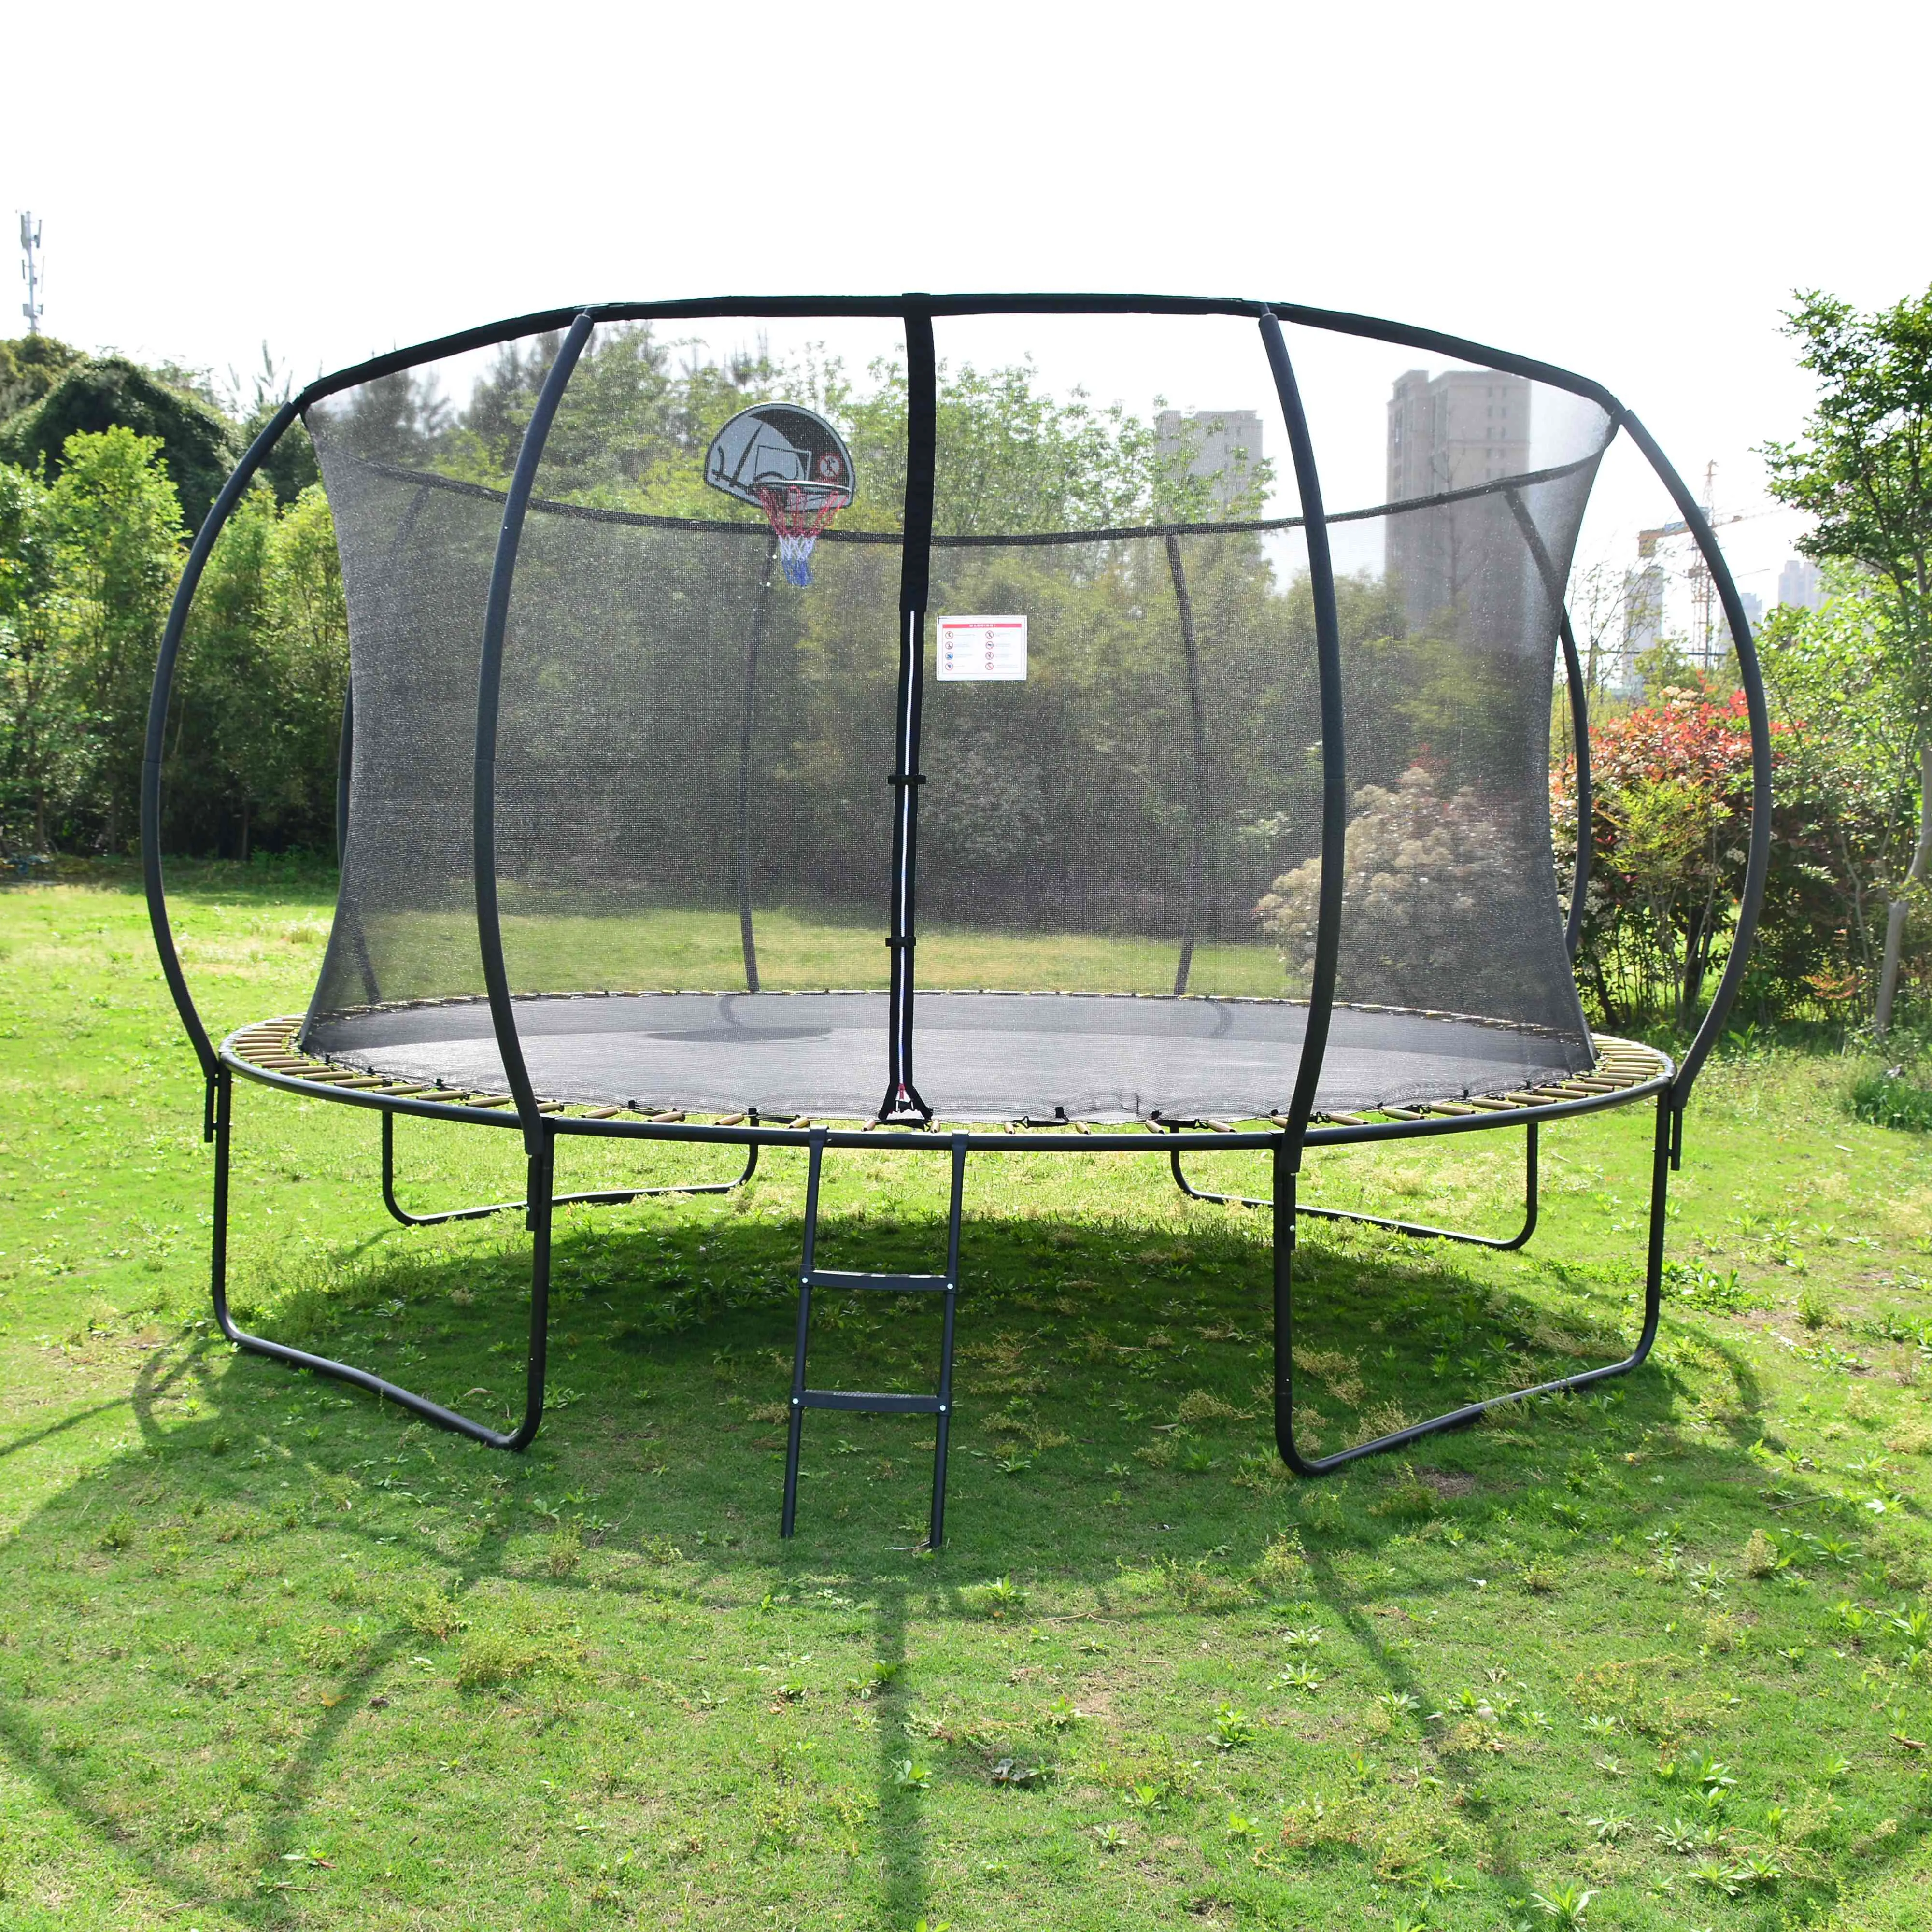 Chất lượng cao và nóng bán 14 ft Vòng Trampoline sân chơi trampolines với lưới bảo vệ